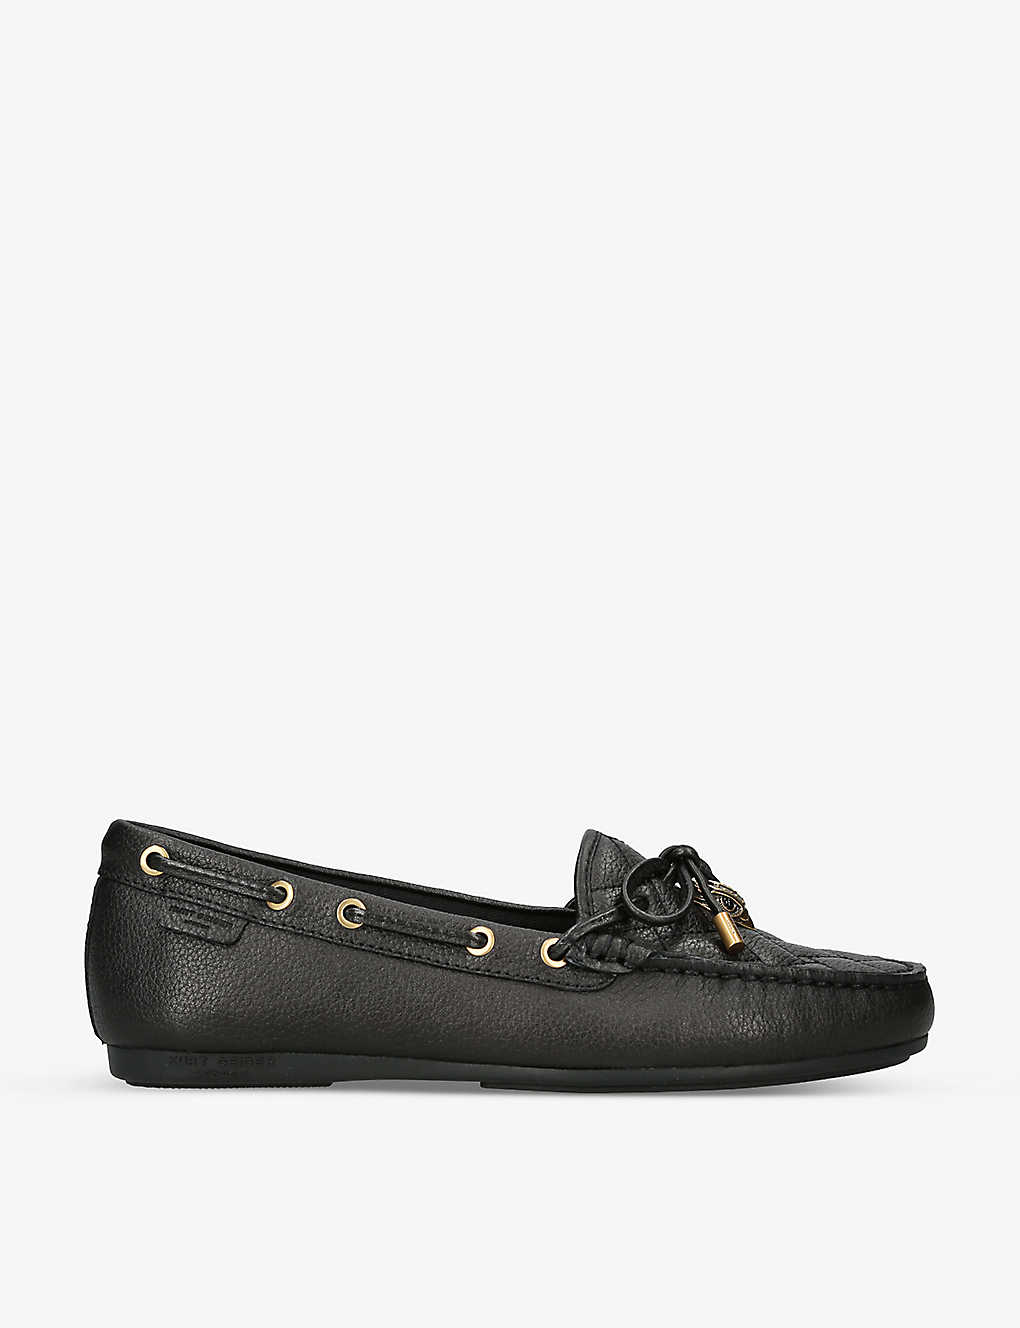 Shop Kurt Geiger London Women's Black Eagle-embellished Leather Moccasin Shoes